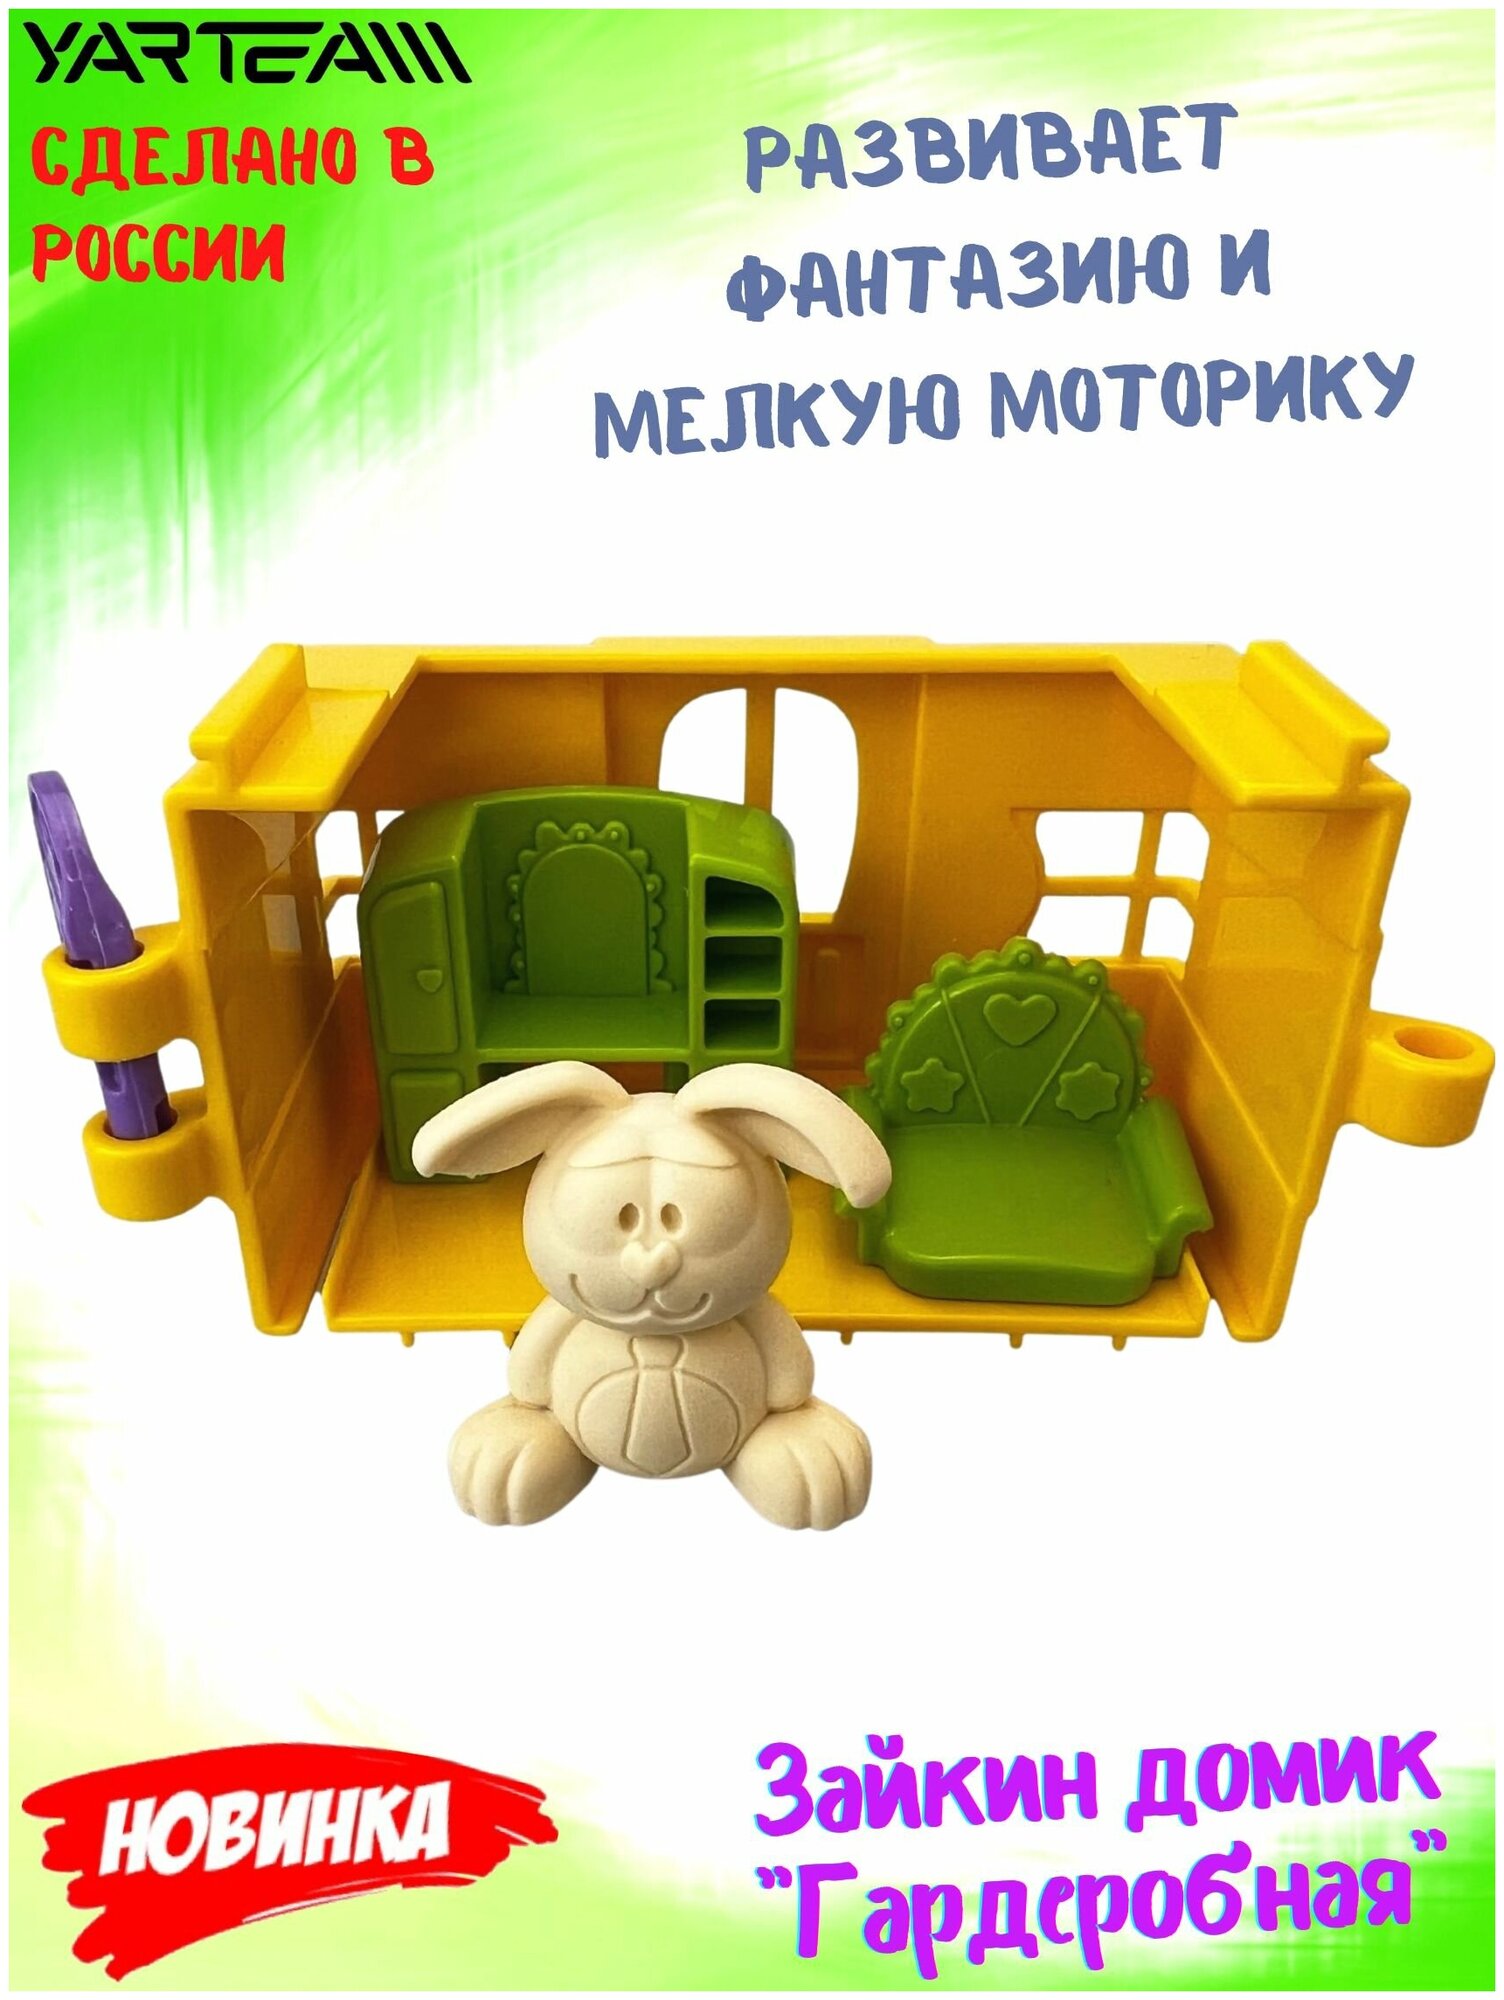 Игрушка детская, Зайкин домик, с фигуркой зайчика, Игровой набор, Гардеробная, игрушки для девочек, желтый, 5 предметов